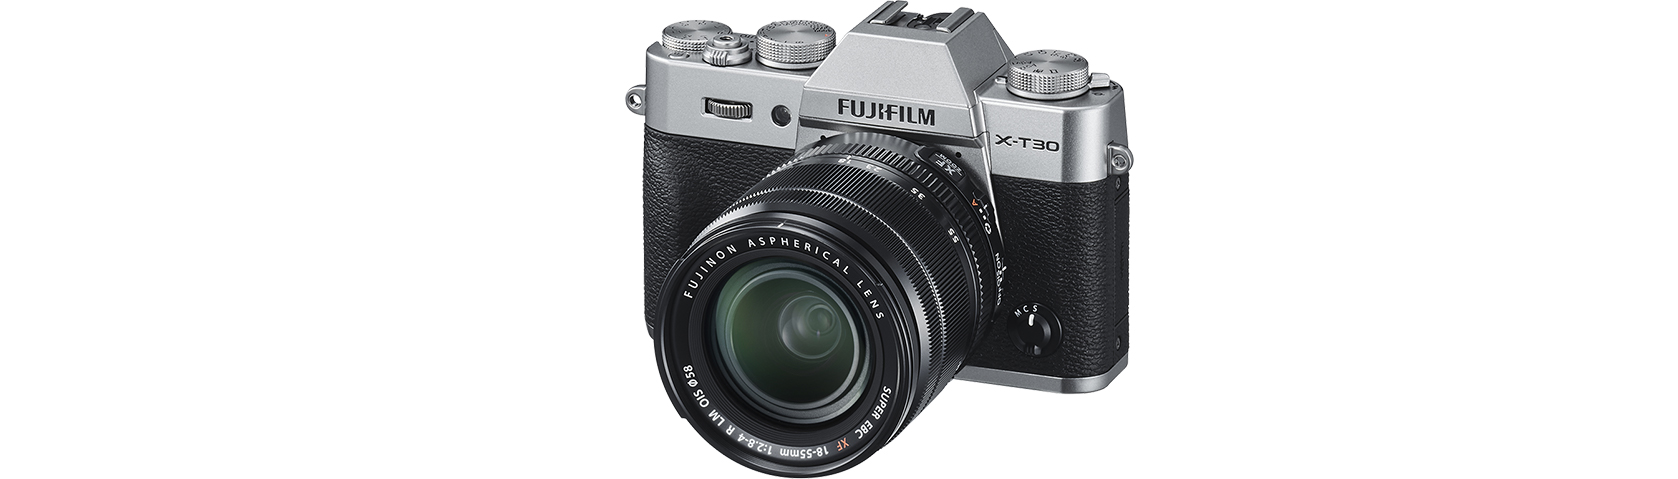 Fujiflm X-T30